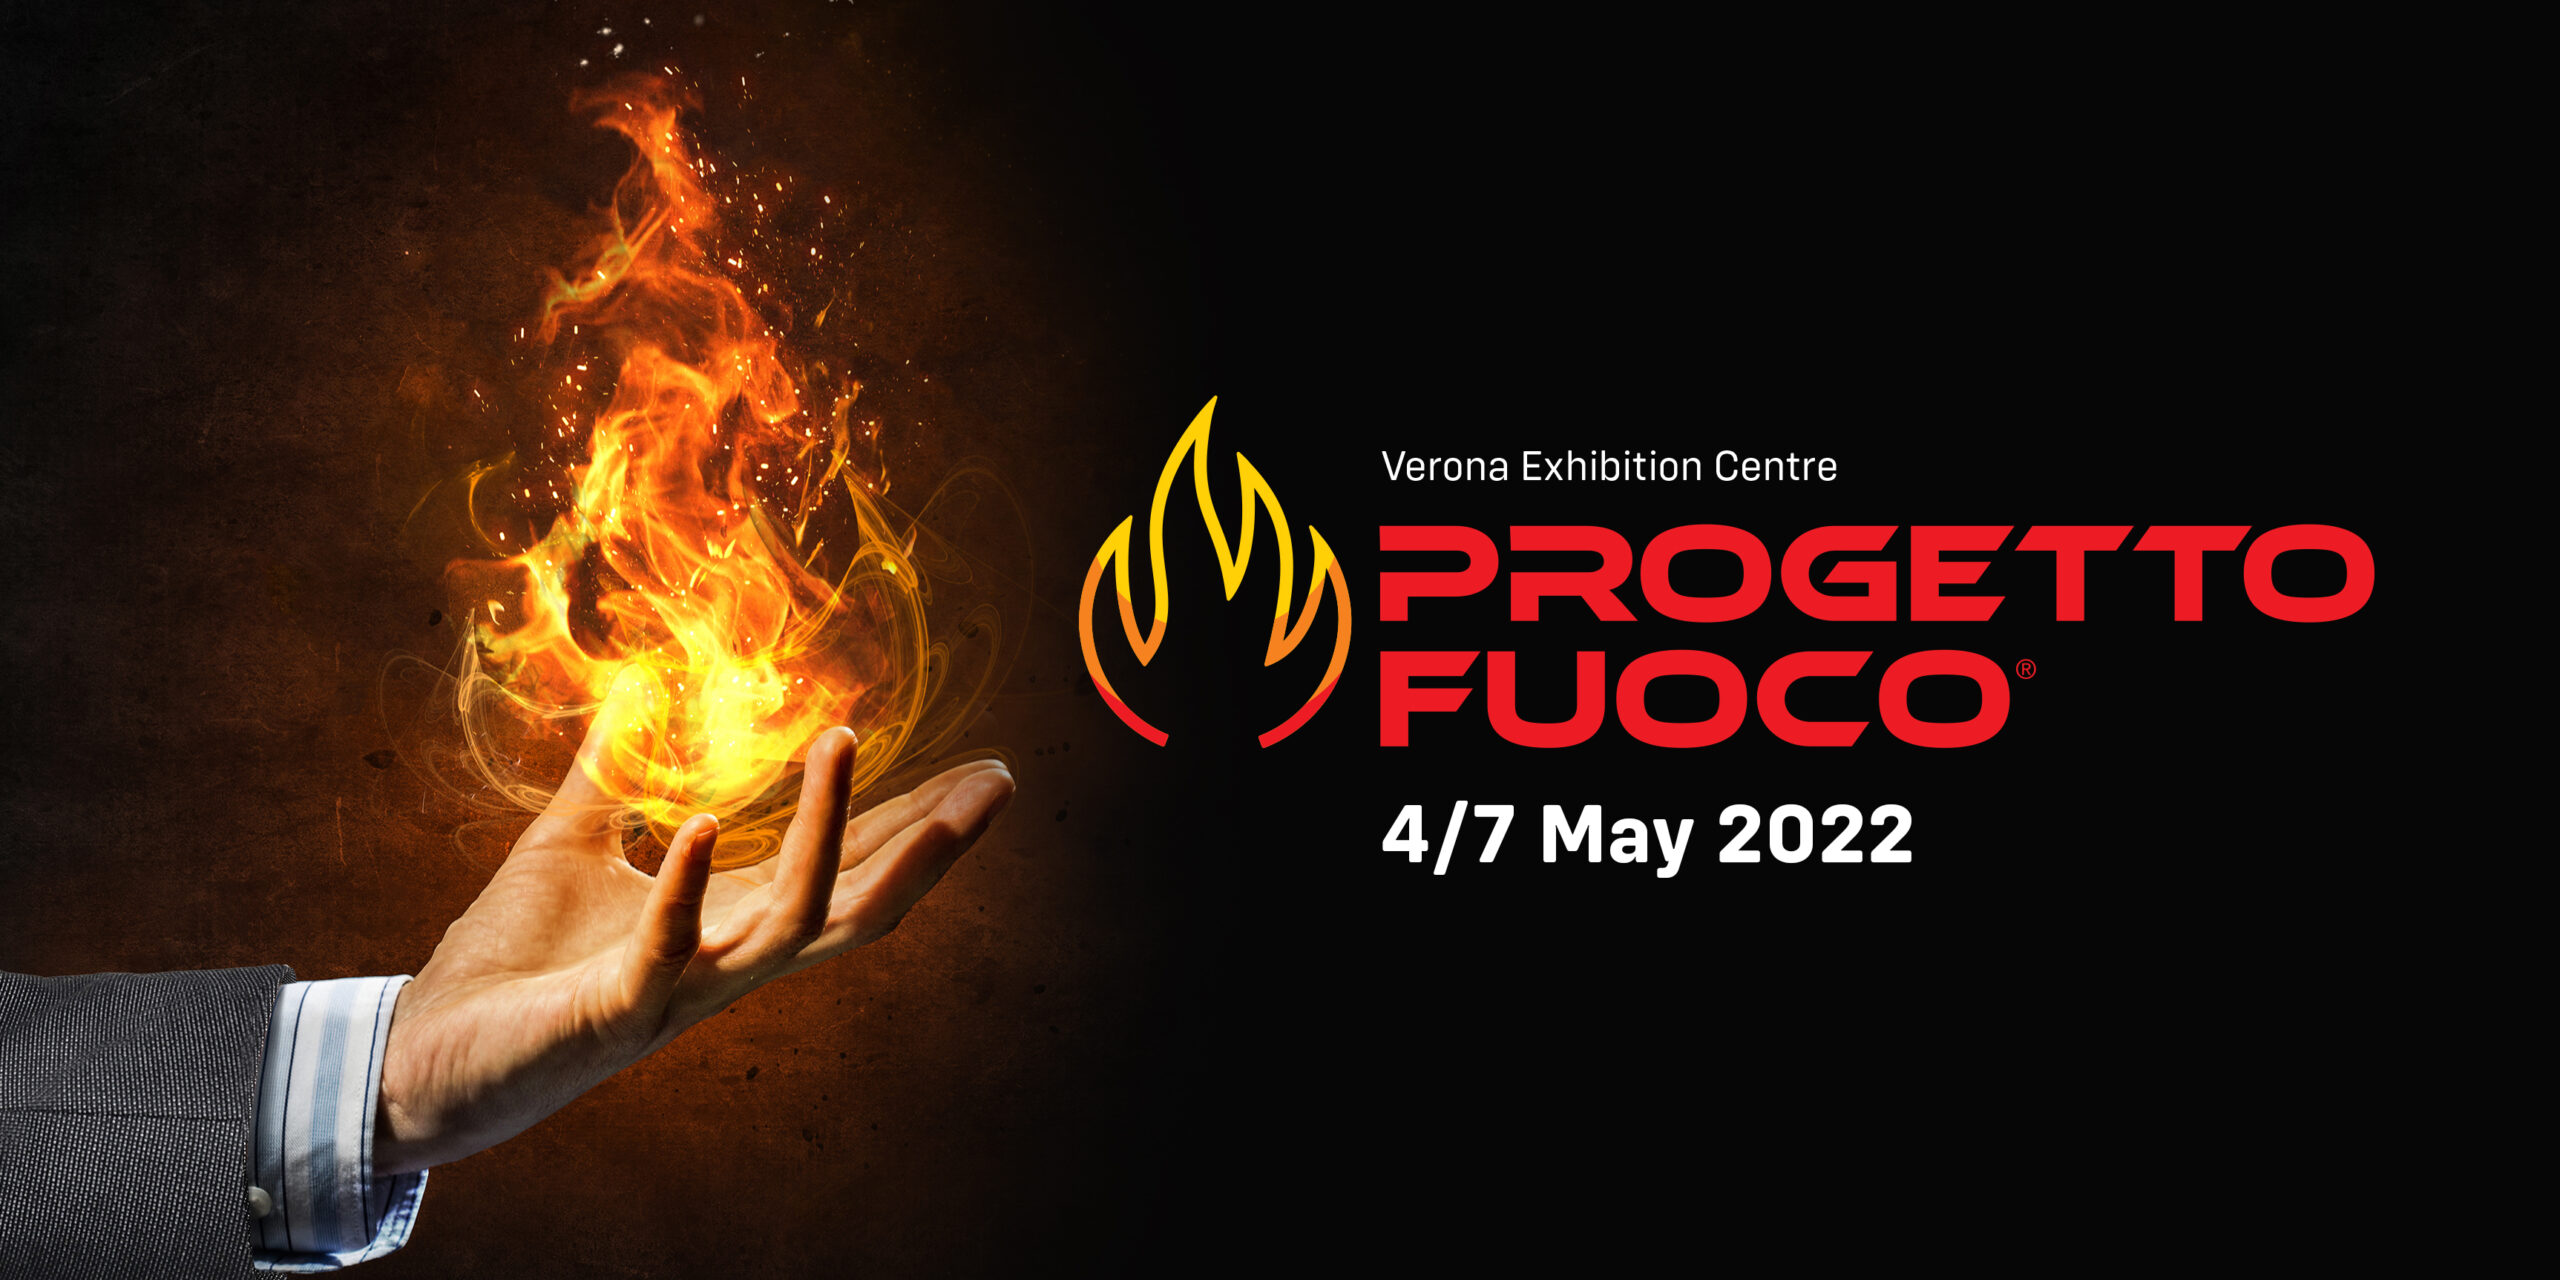 Progetto Fuoco 2022: news and tips - Progetto Fuoco